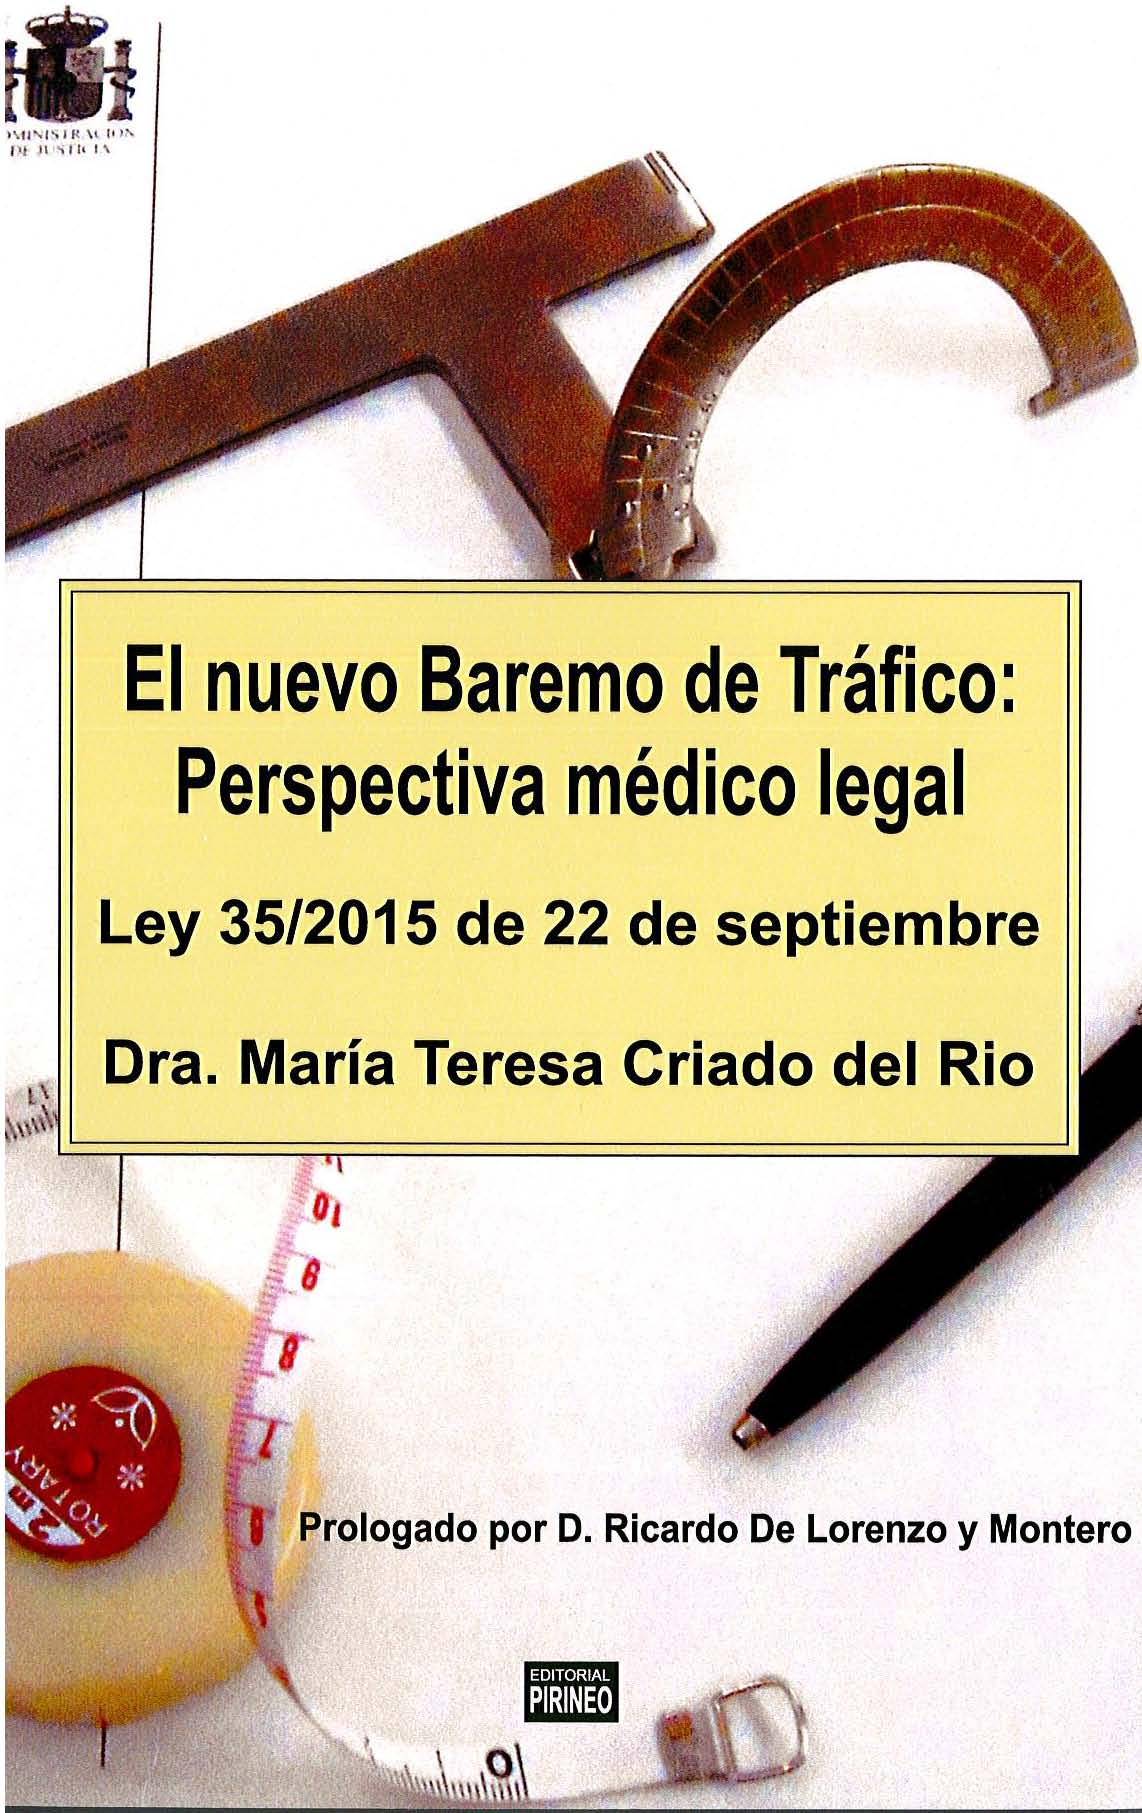 EL NUEVO BAREMO DE TRÁFICO: PERSPECTIVA MÉDICO LEGAL. LEY 35/2015 DE 22 DE SEPTIEMBRE